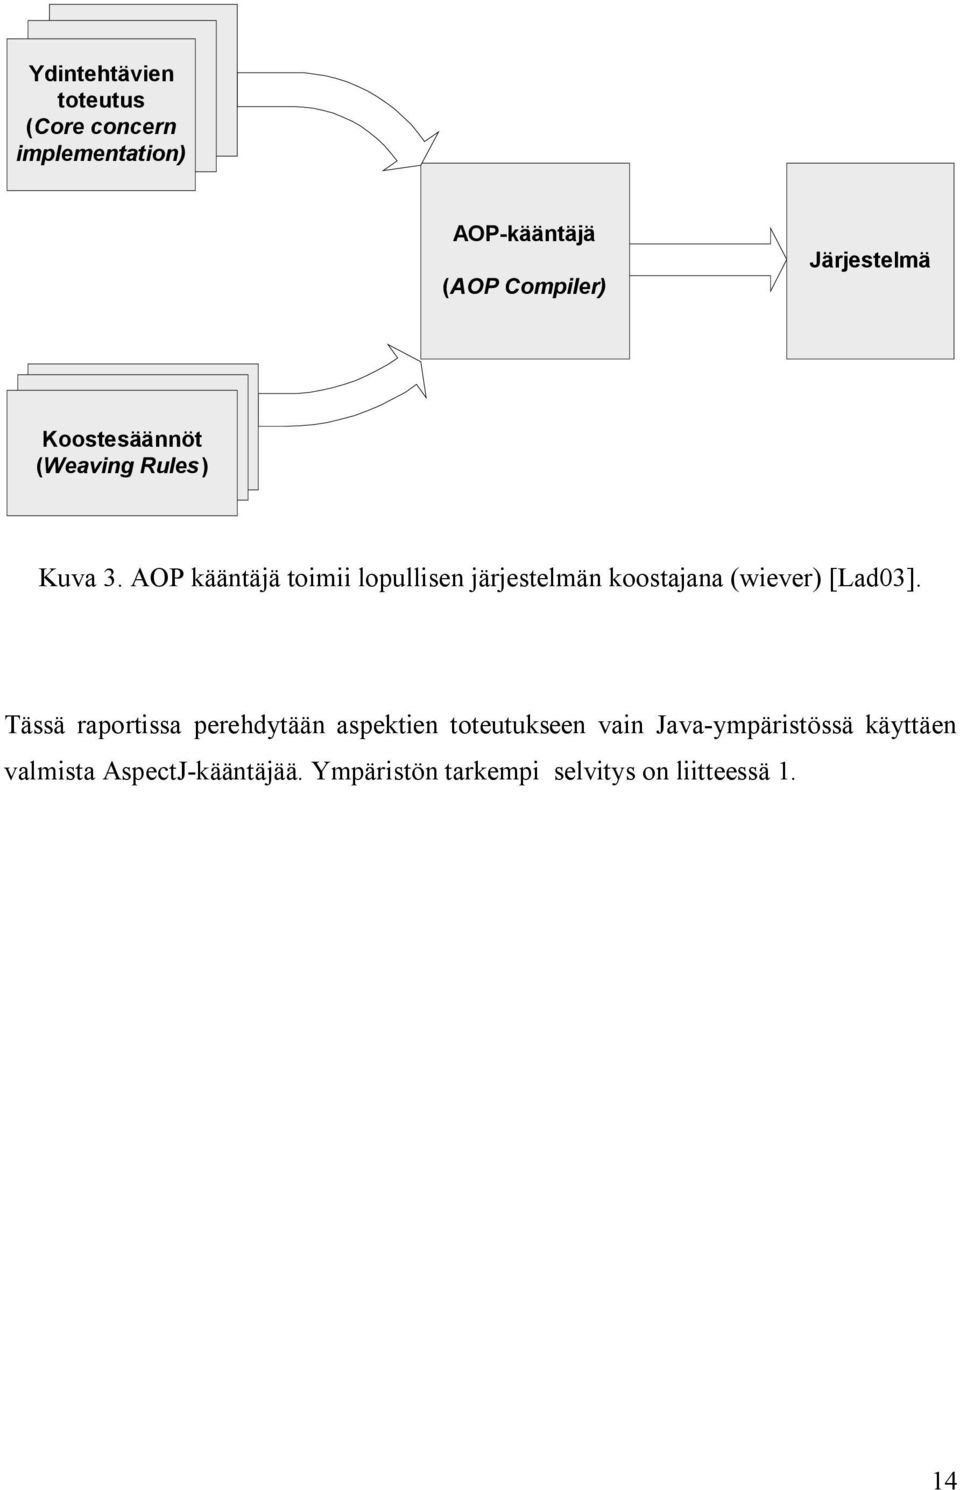 AOP kääntäjä toimii lopullisen järjestelmän koostajana (wiever) [Lad03].